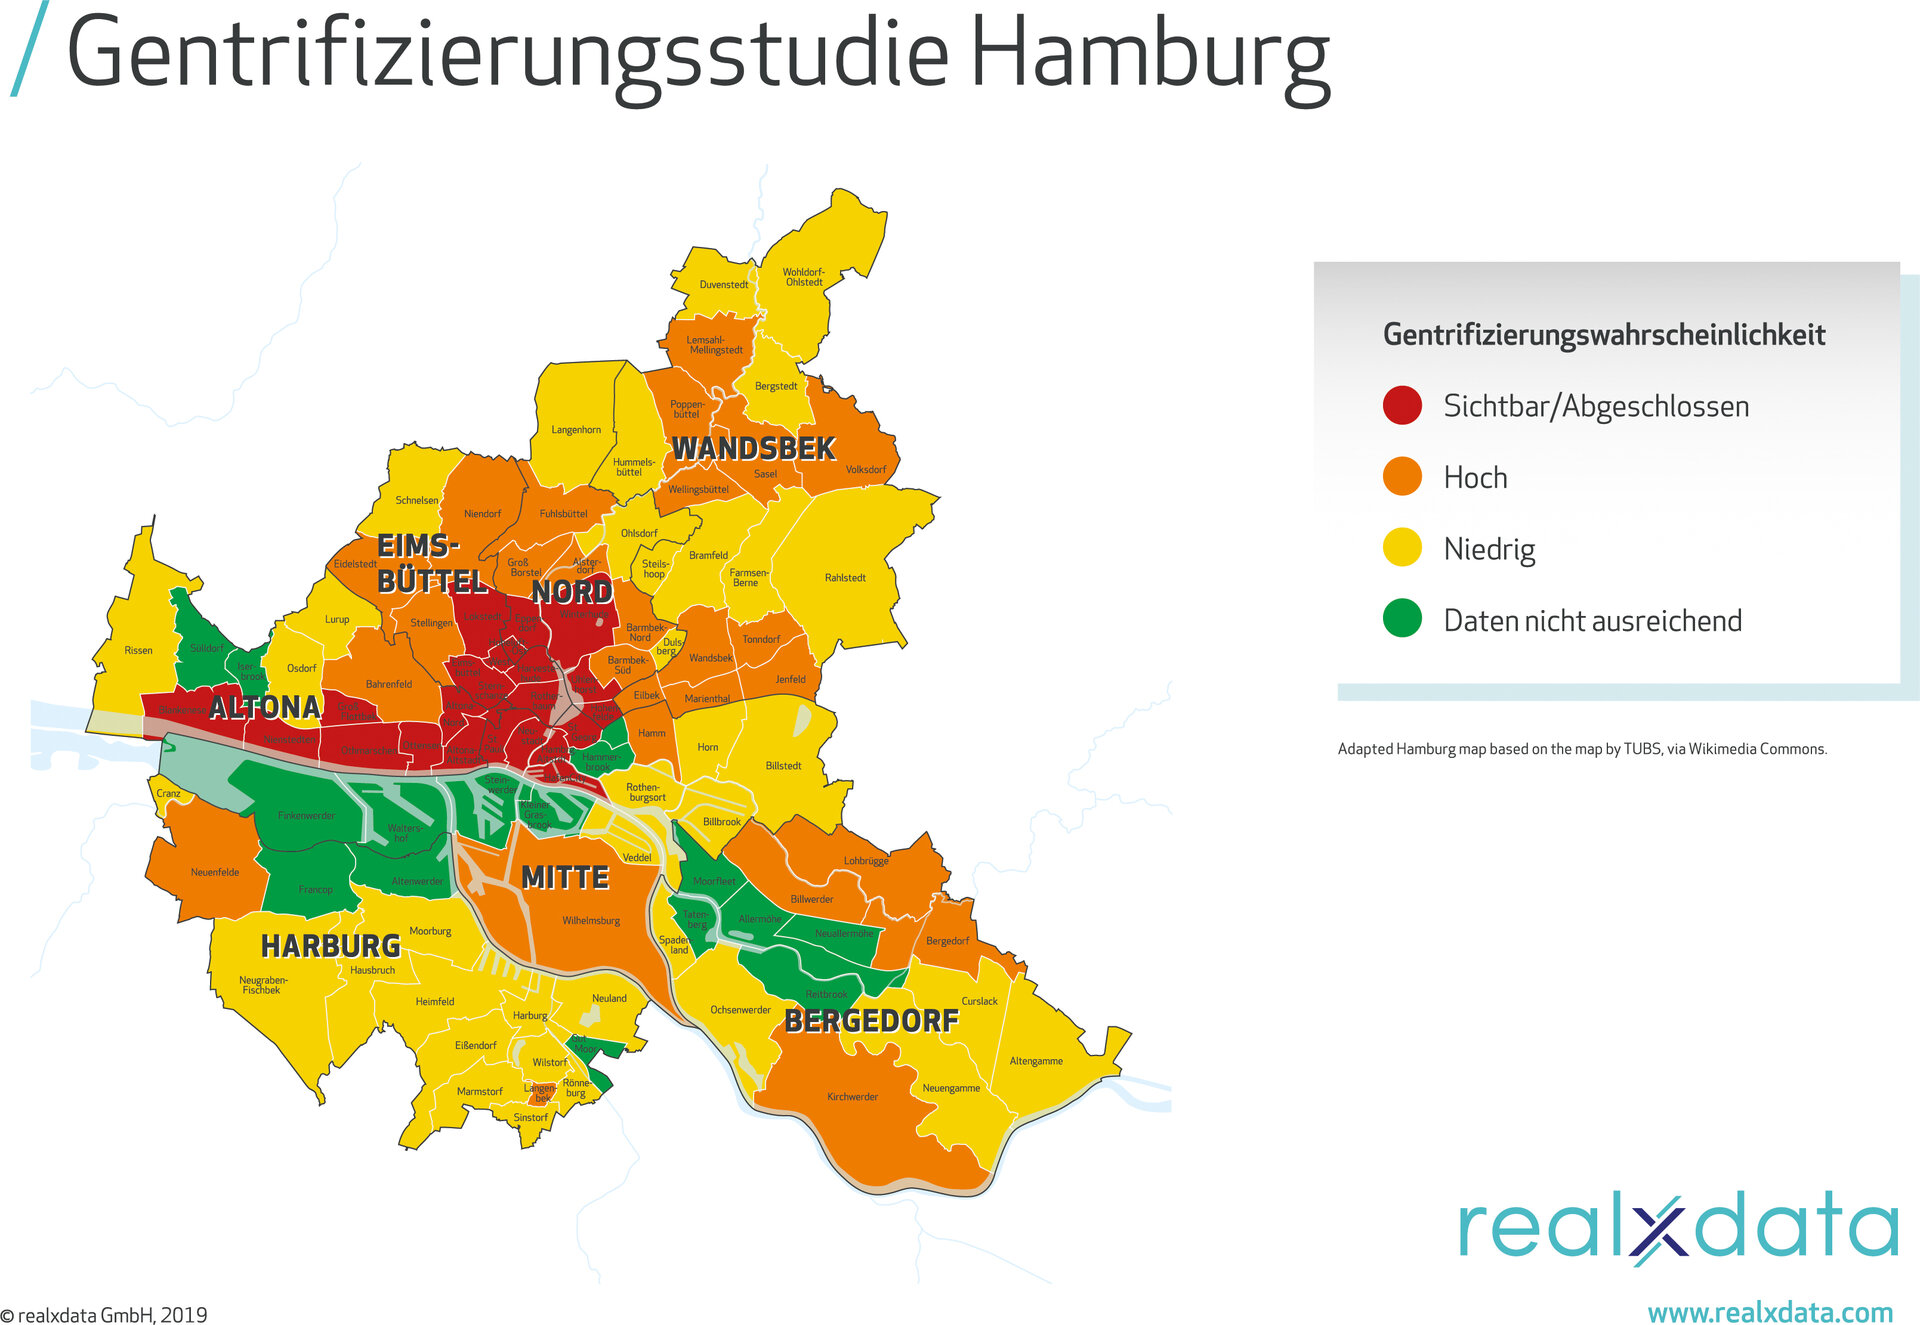 Gentrifizierungswahrscheinlichkeit der Hamburger Stadtteile